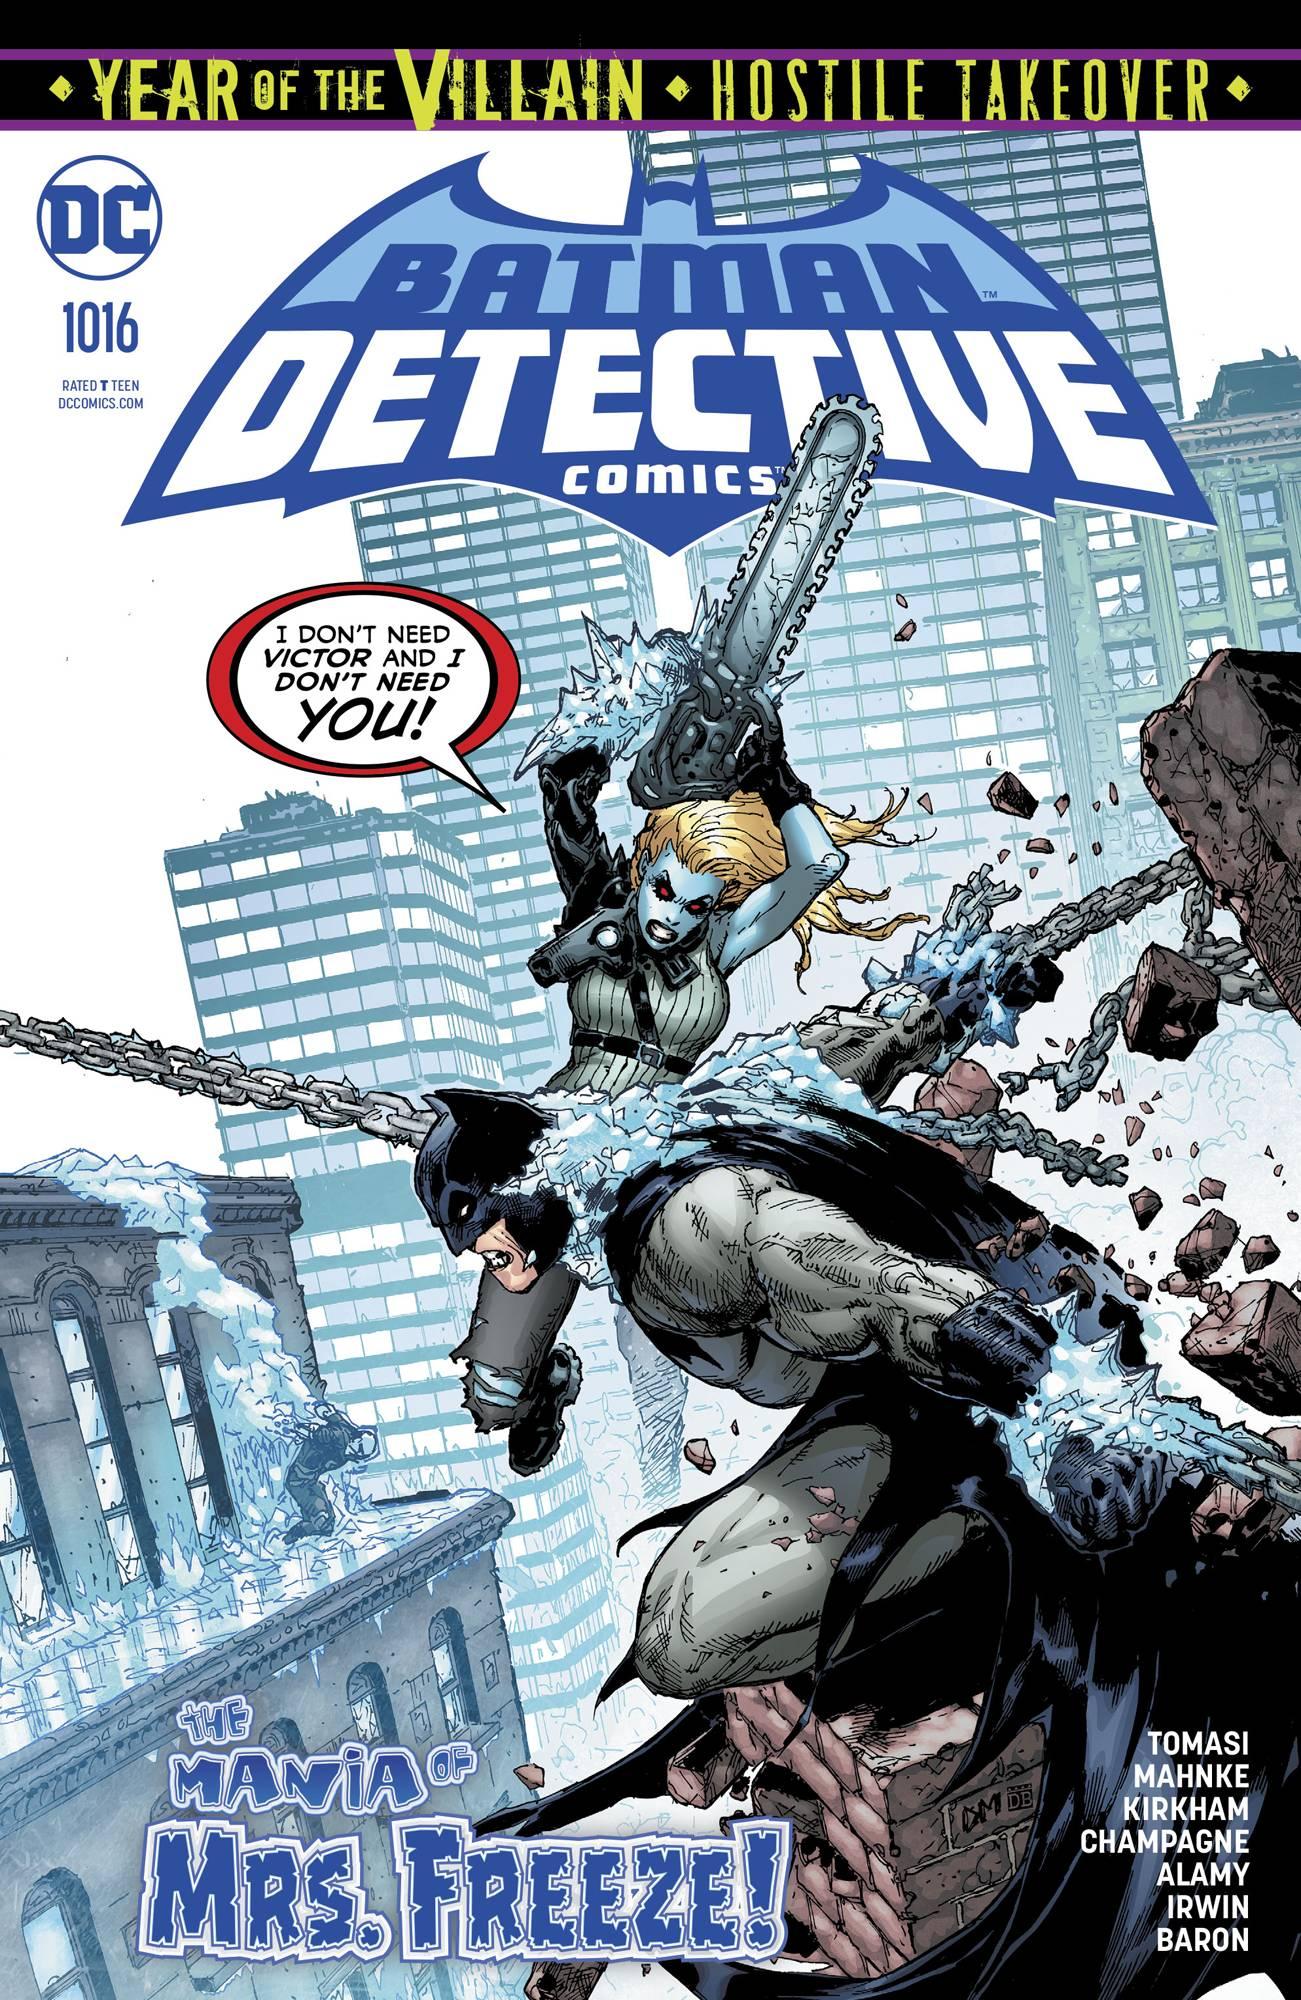 Detective Comics Vol. 1 #1016